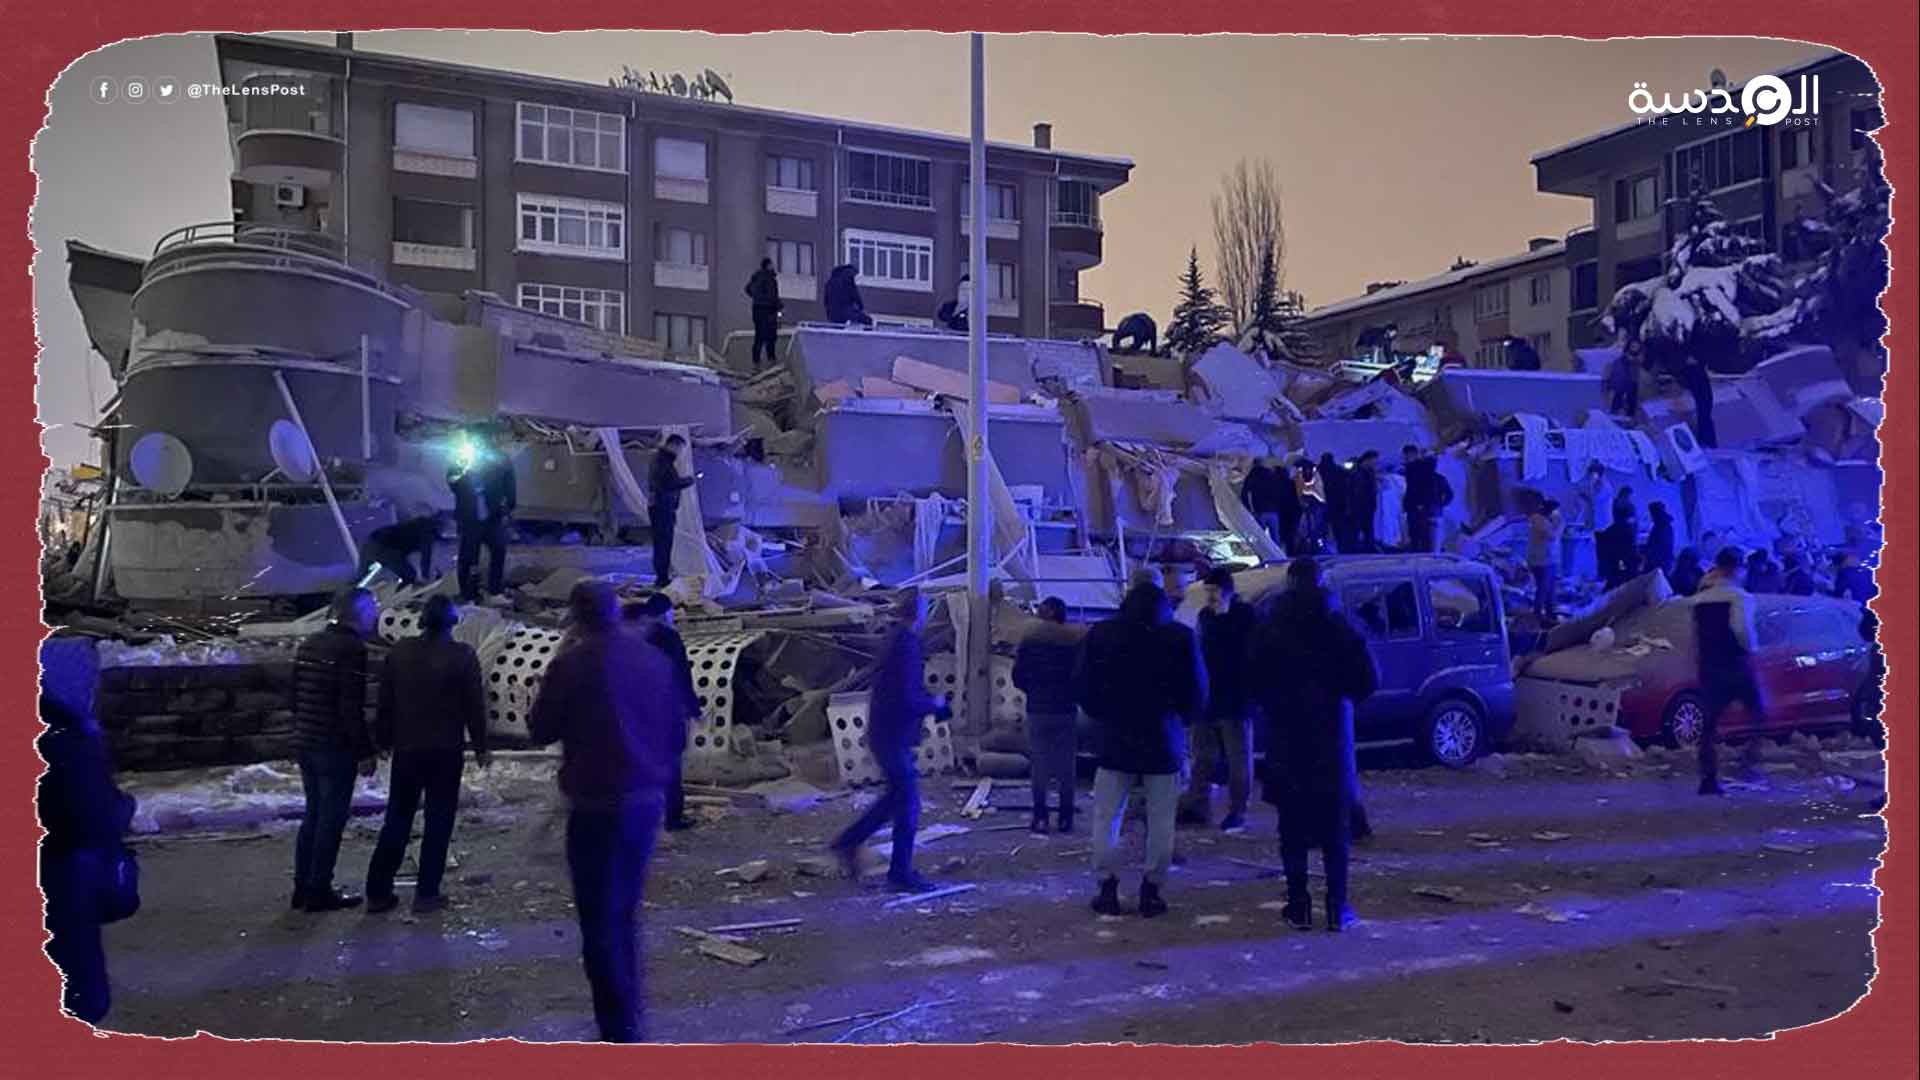 زلزال قوي يضرب جنوب تركيا وسوريا يخلف مئات الضحايا والمصابين